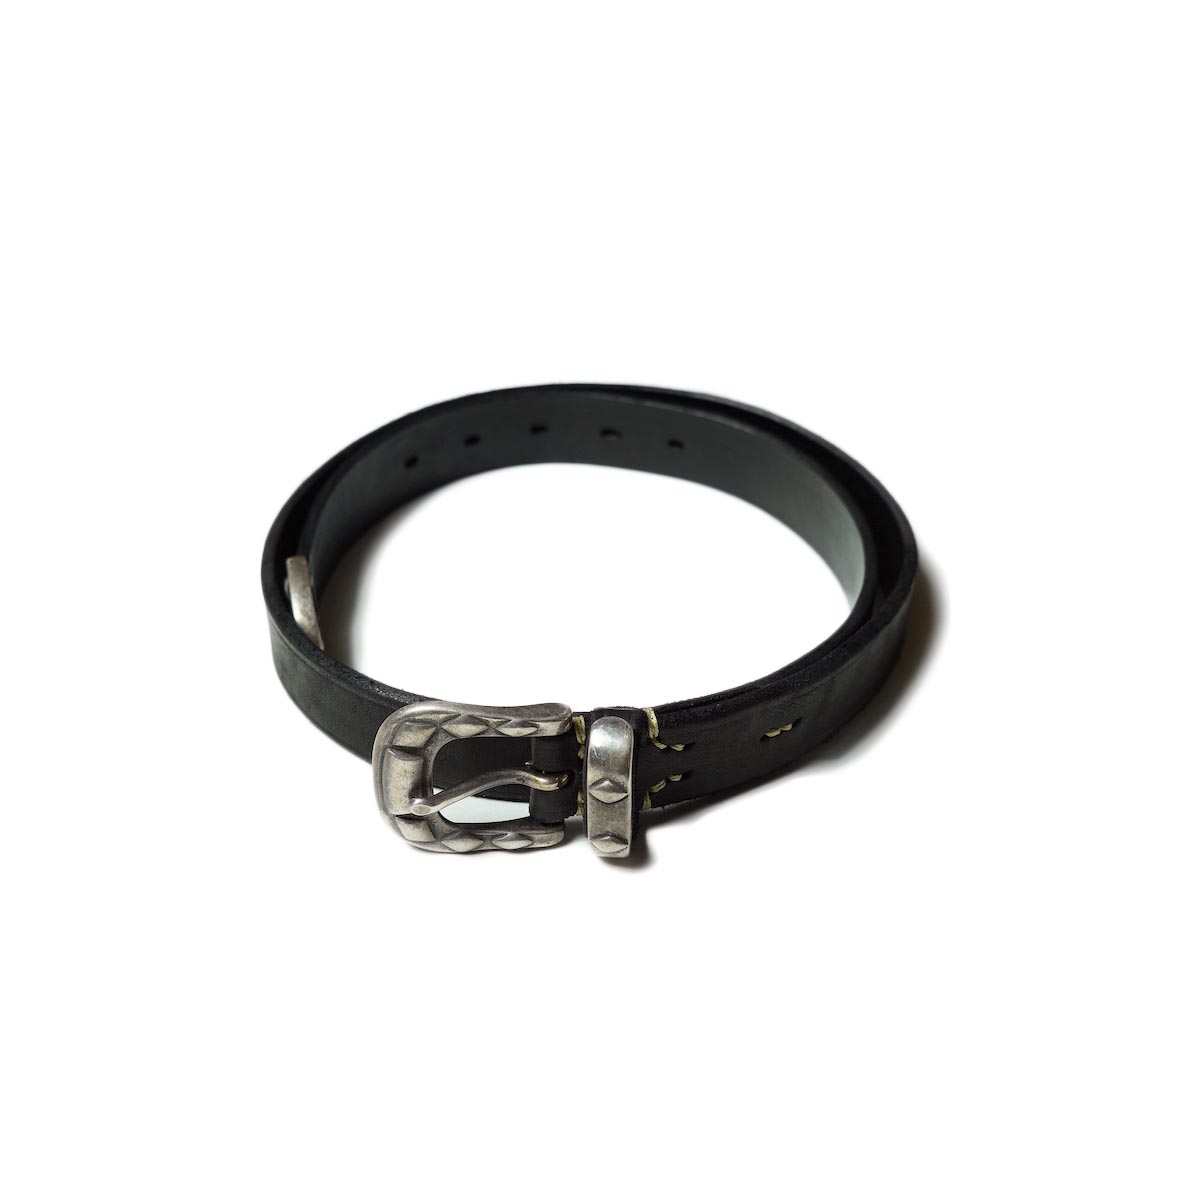 Vintage Works / DH5740 Leather Belt -Black